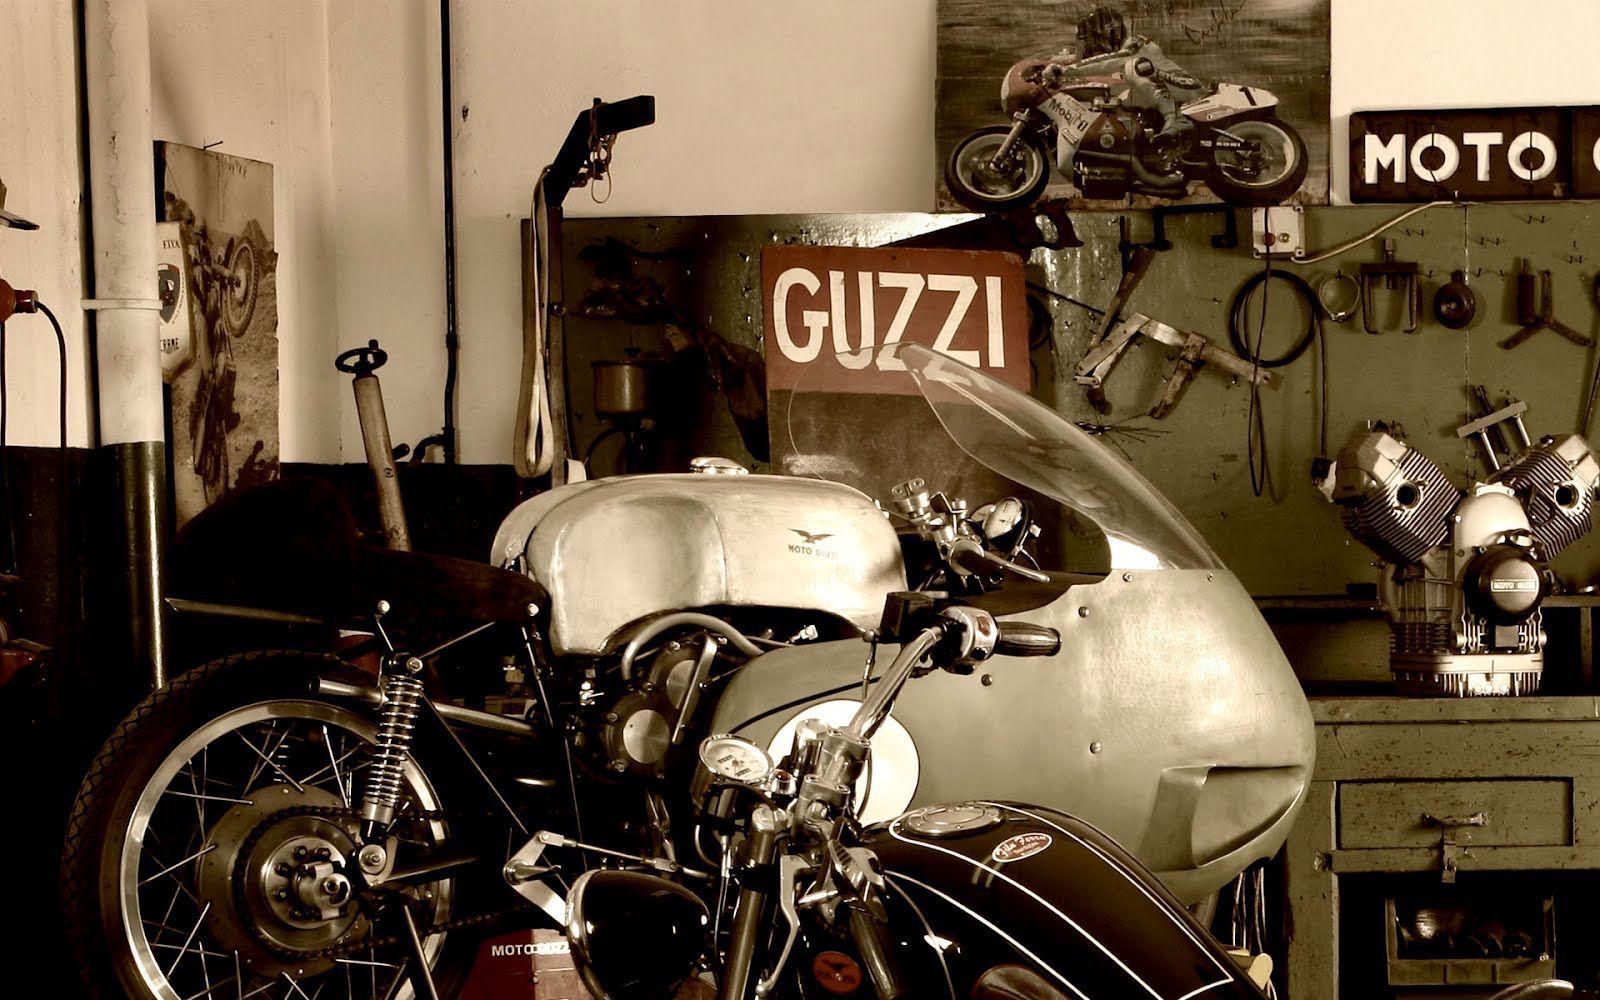 MOTO GUZZI WALLPAPER. Moto guzzi, Moto guzzi motorcycles